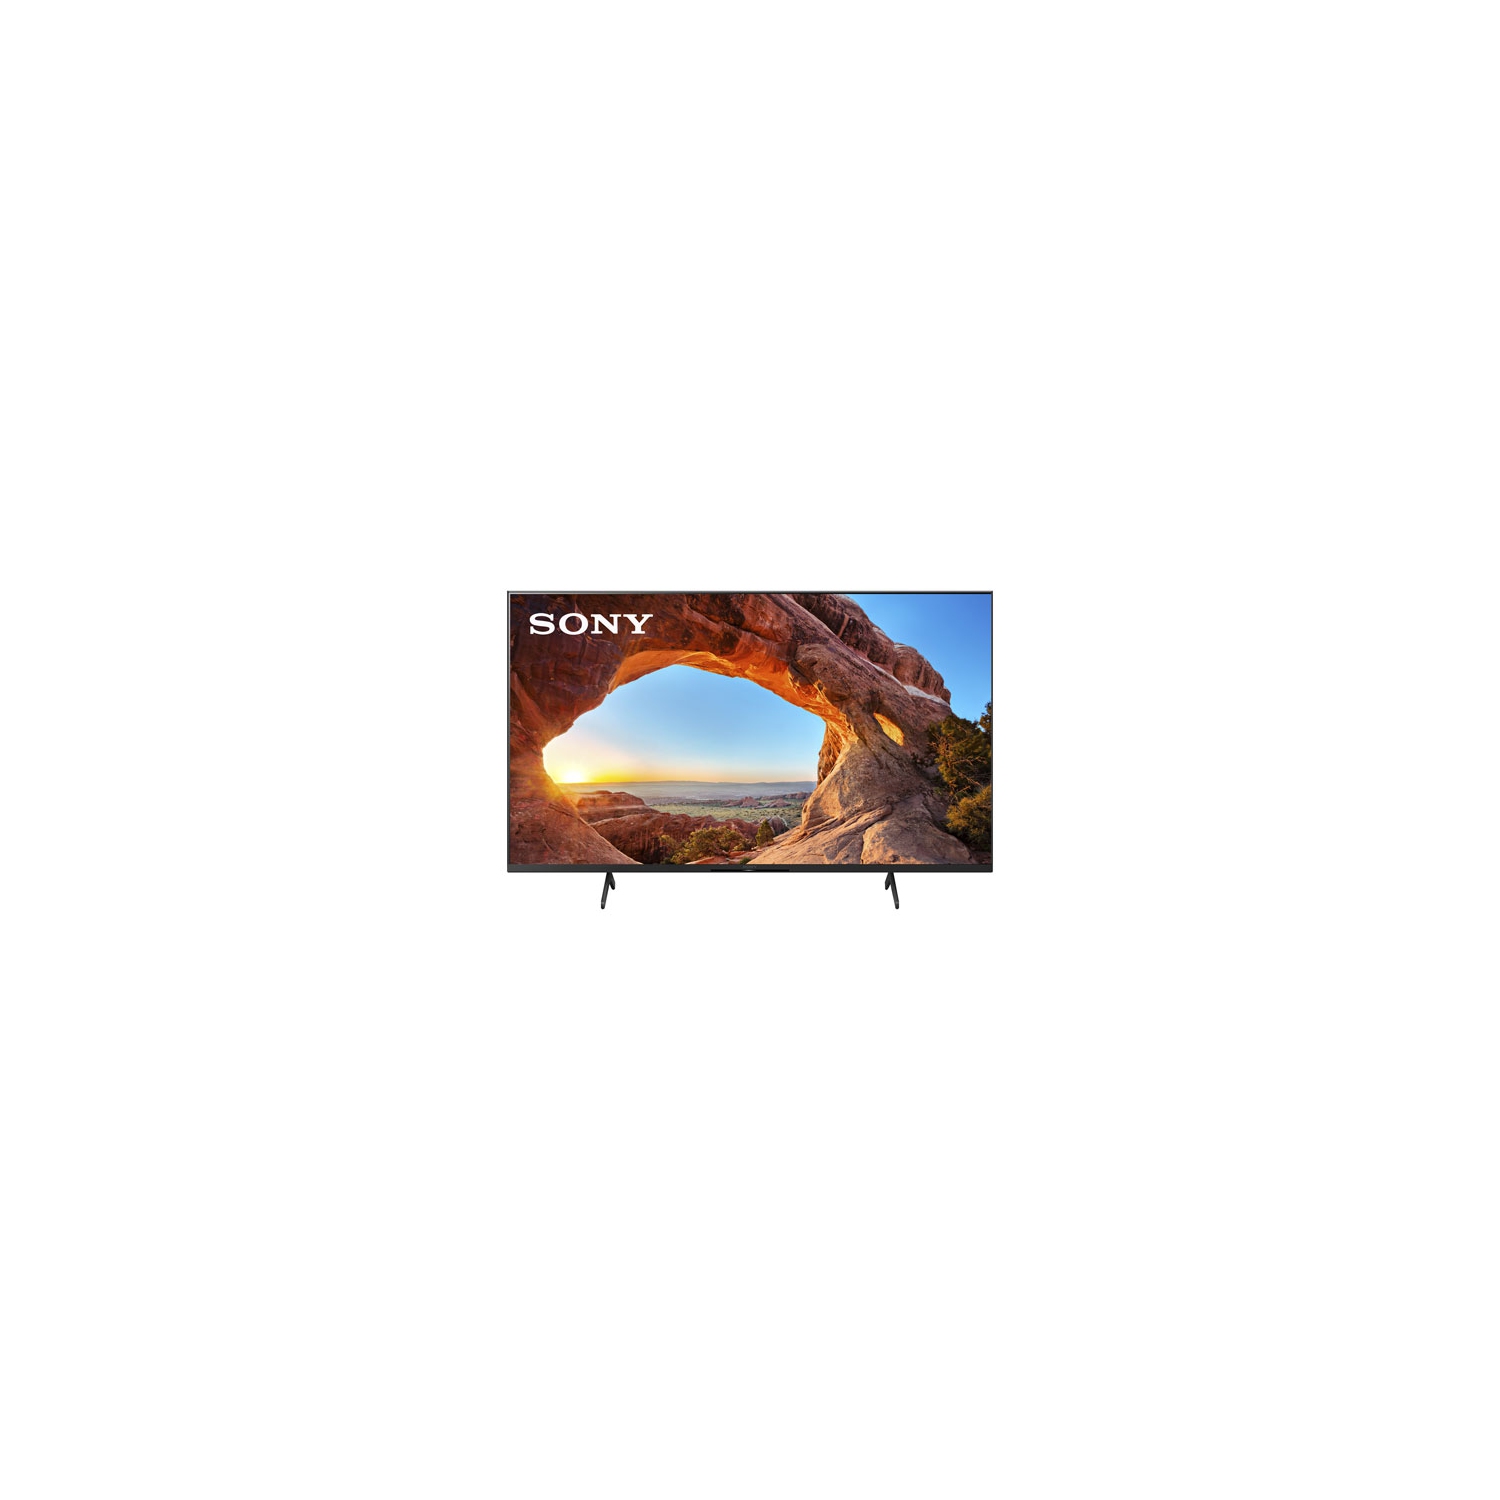 Open Box - Sony X85J 50" 4K UHD HDR LED Smart Google TV (KD50X85J) - 2021